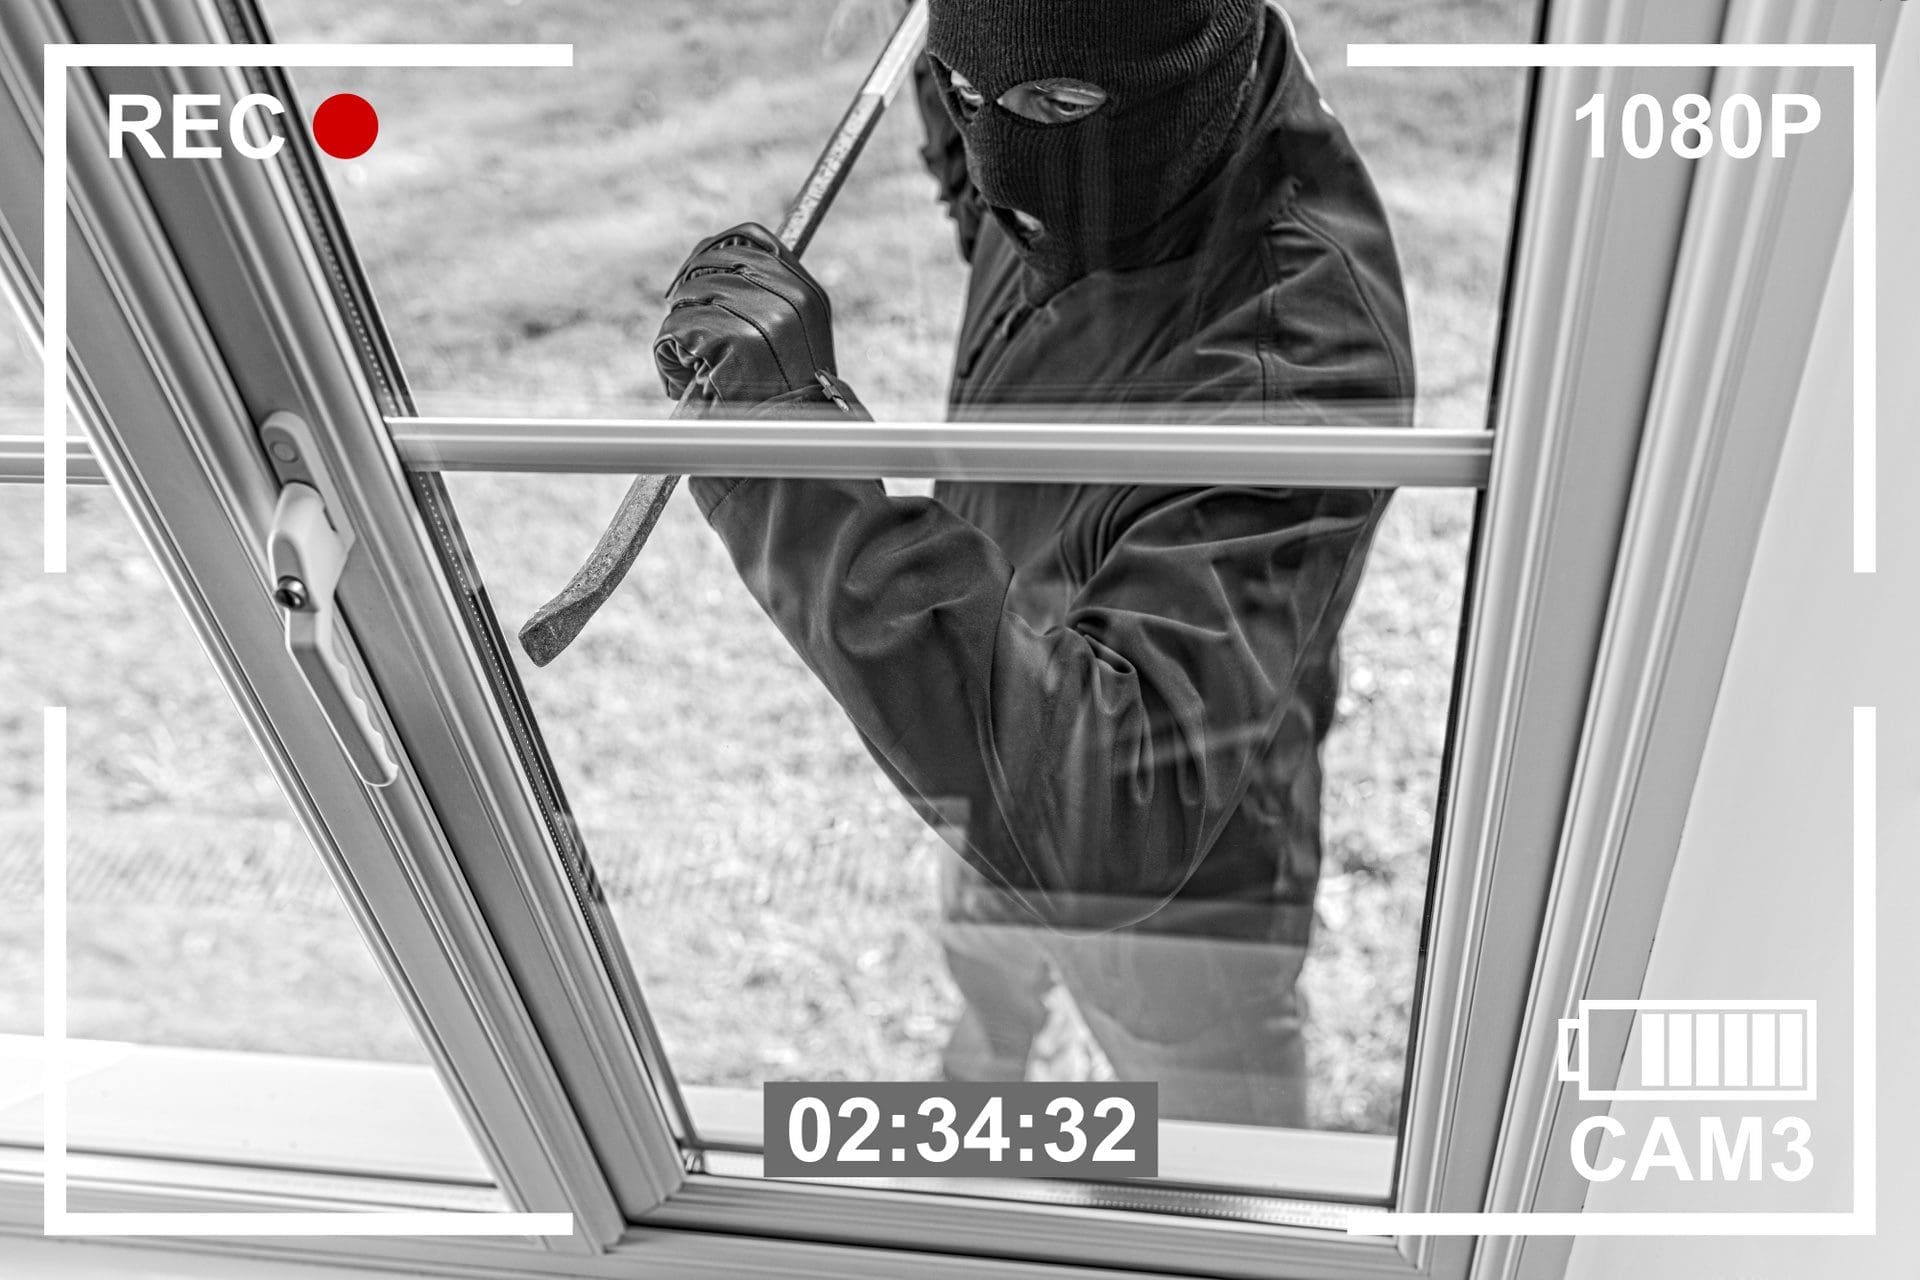 Einbrecher hebelt Fenster mit Brecheisen auf - die Reparatur solcher Einbruchschäden kostet meist mehrere Hundert Euro. Gut, wenn man richtig und ausreichend versichert ist. (© Brian Jackson - stock.adobe.com)